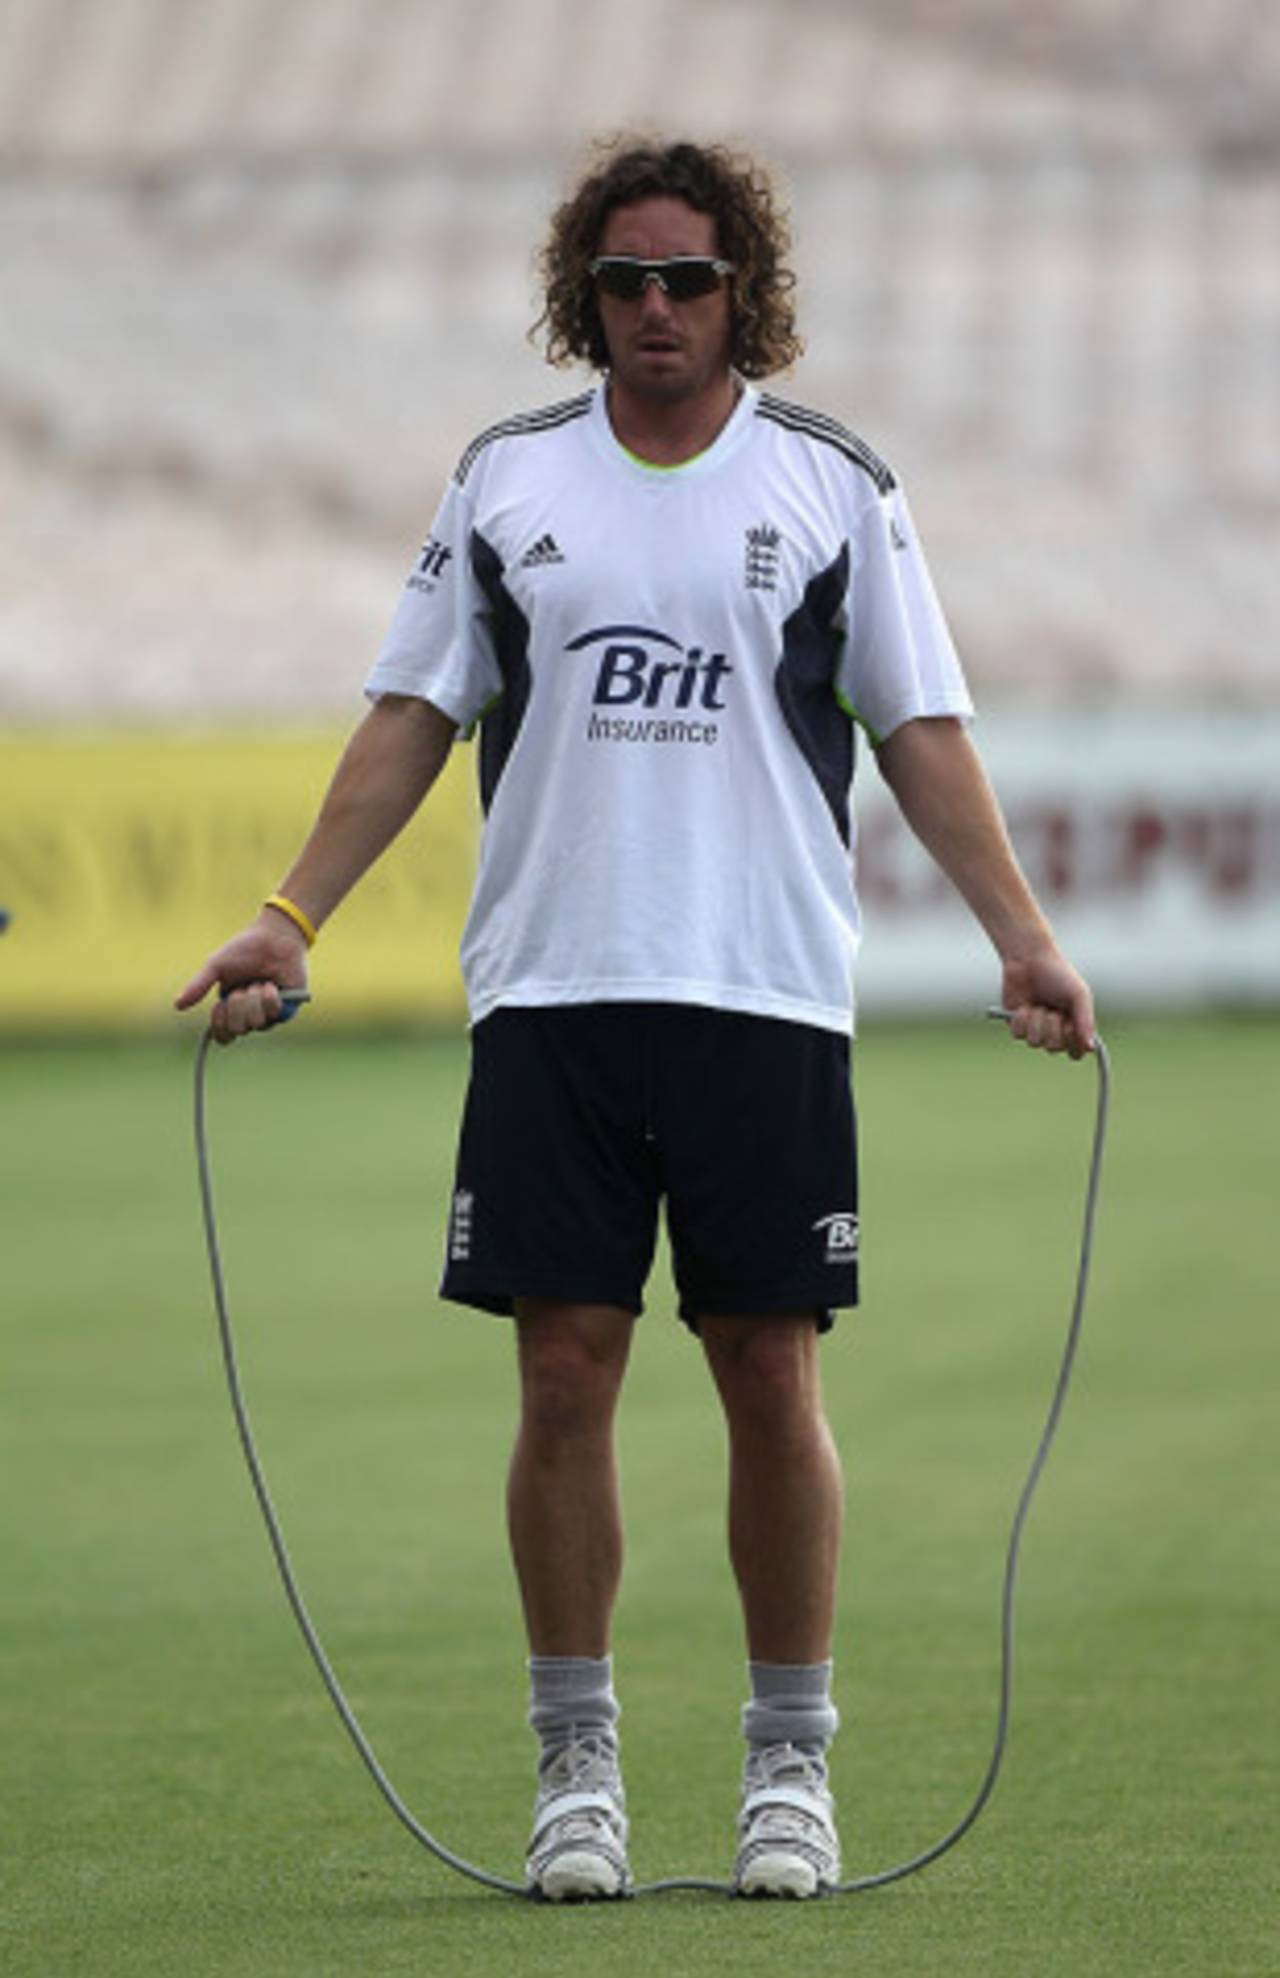 Ryan Sidebottom skips during England's practice session, England v Bangladesh, 2nd Test, Old Trafford, June 3, 2010